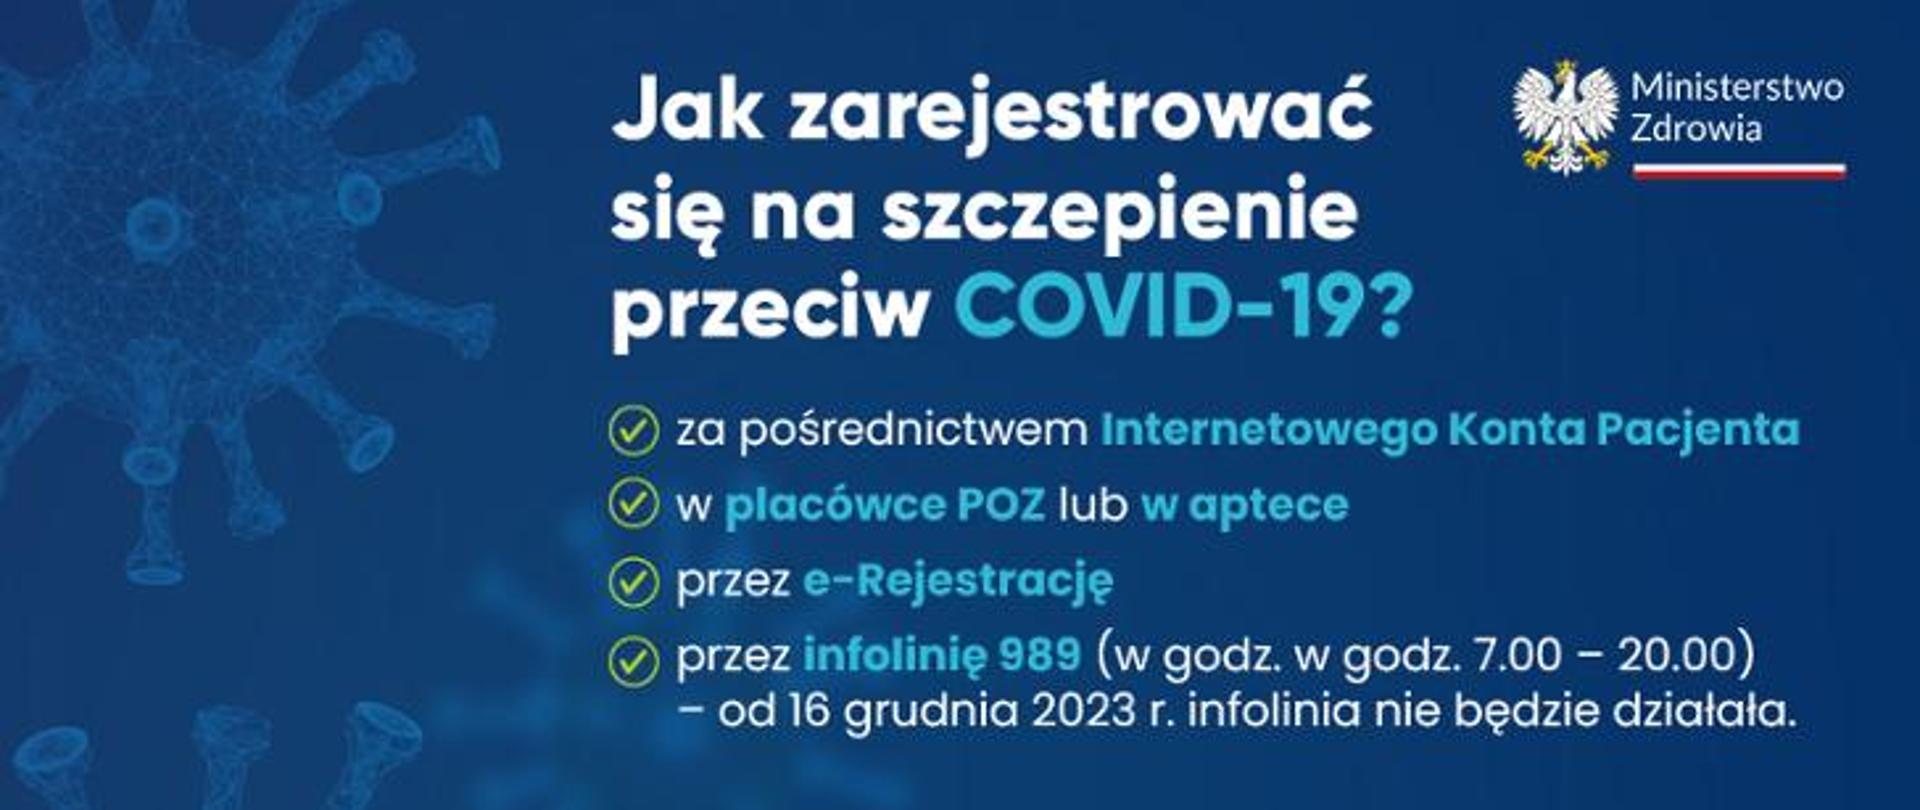 napis na niebieskim tle Jak zarejestrować się na szczepienie przeciw COVID-19?